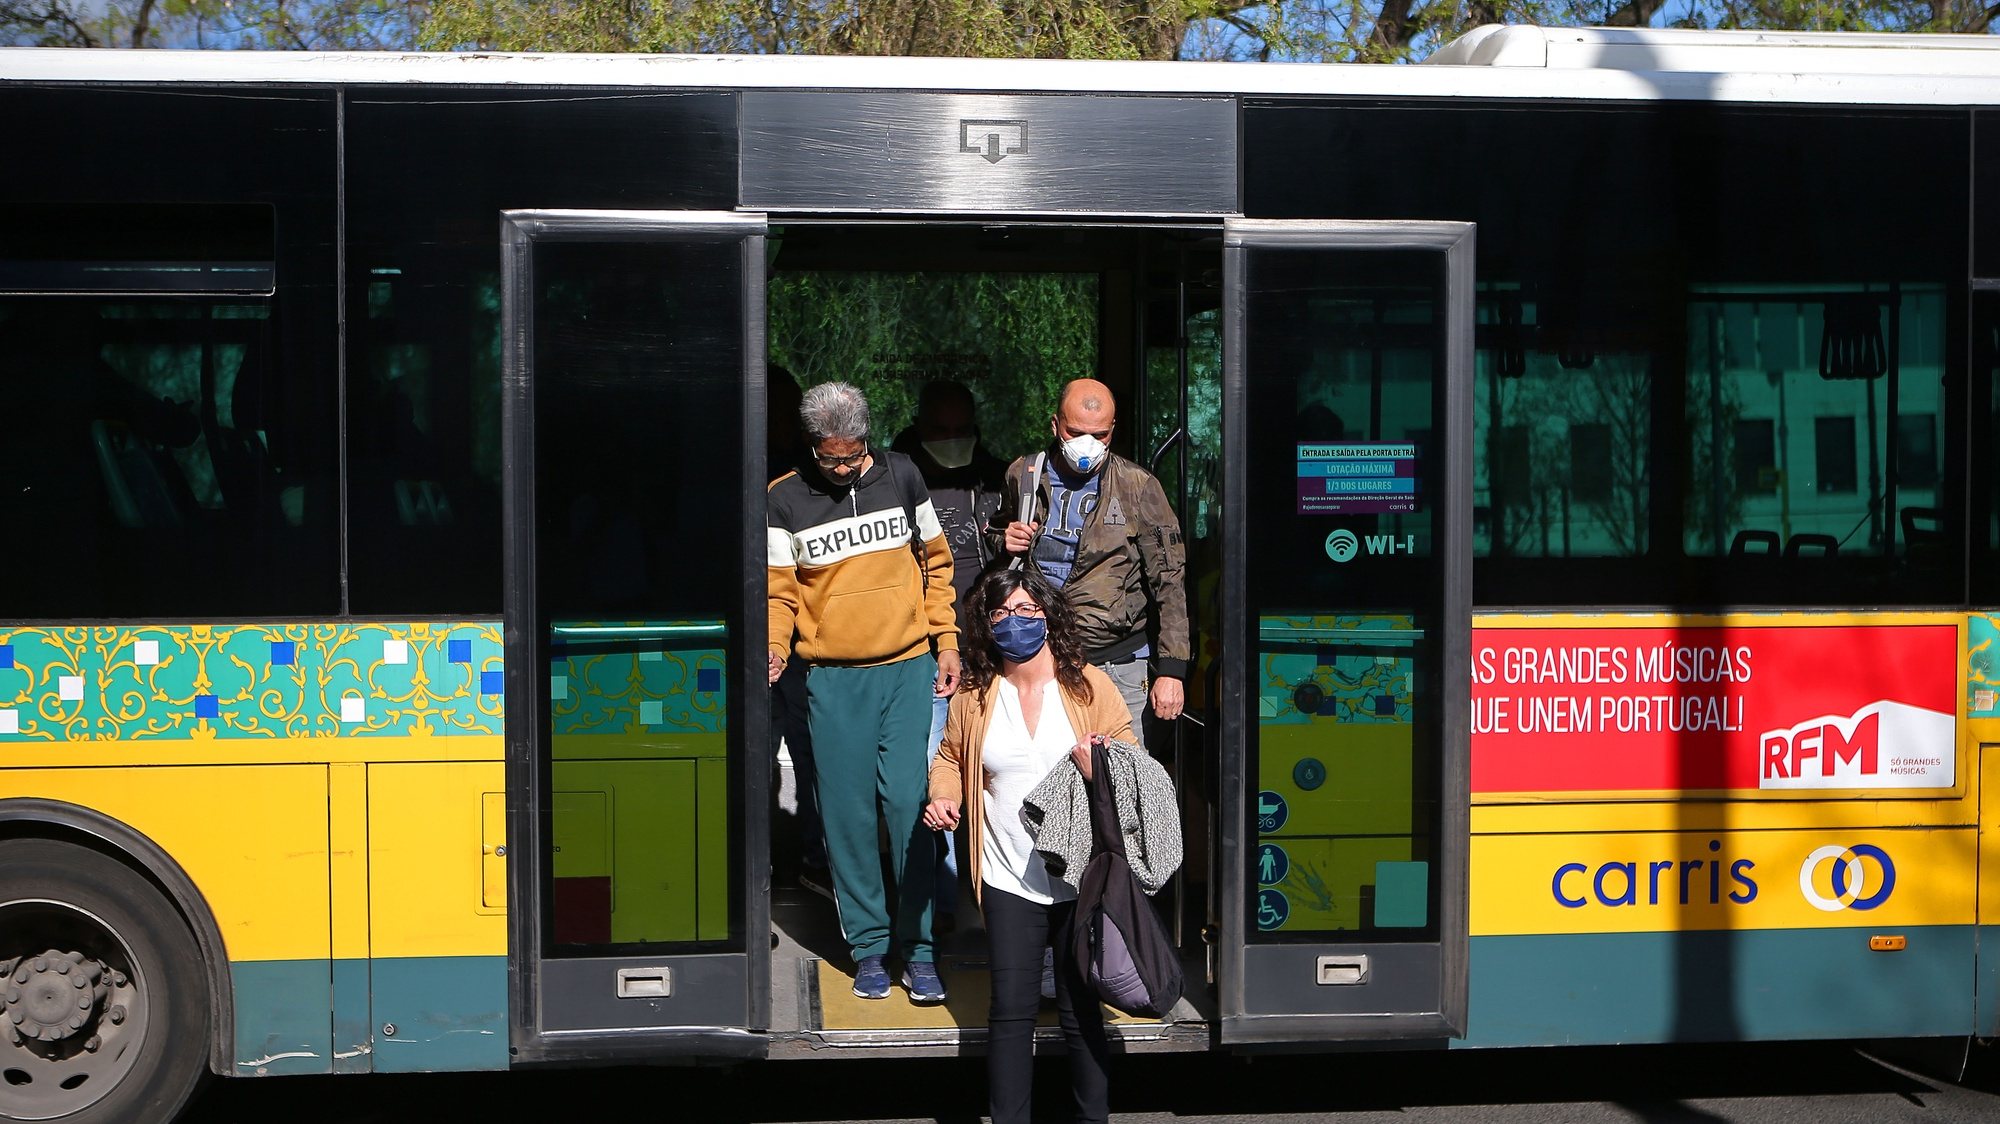 Passageiros da Carris à saída de um autocarro, em Lisboa, 29 de abril de 2020. O decreto-lei que regulamenta a aplicação do estado de emergência até dia 02 de maio, define que o número máximo de passageiros por transporte deve ser reduzido para um terço do número máximo de lugares disponíveis, por forma a garantir a distância adequada entre os utentes dos transportes. ANTÓNIO PEDRO SANTOS/LUSA